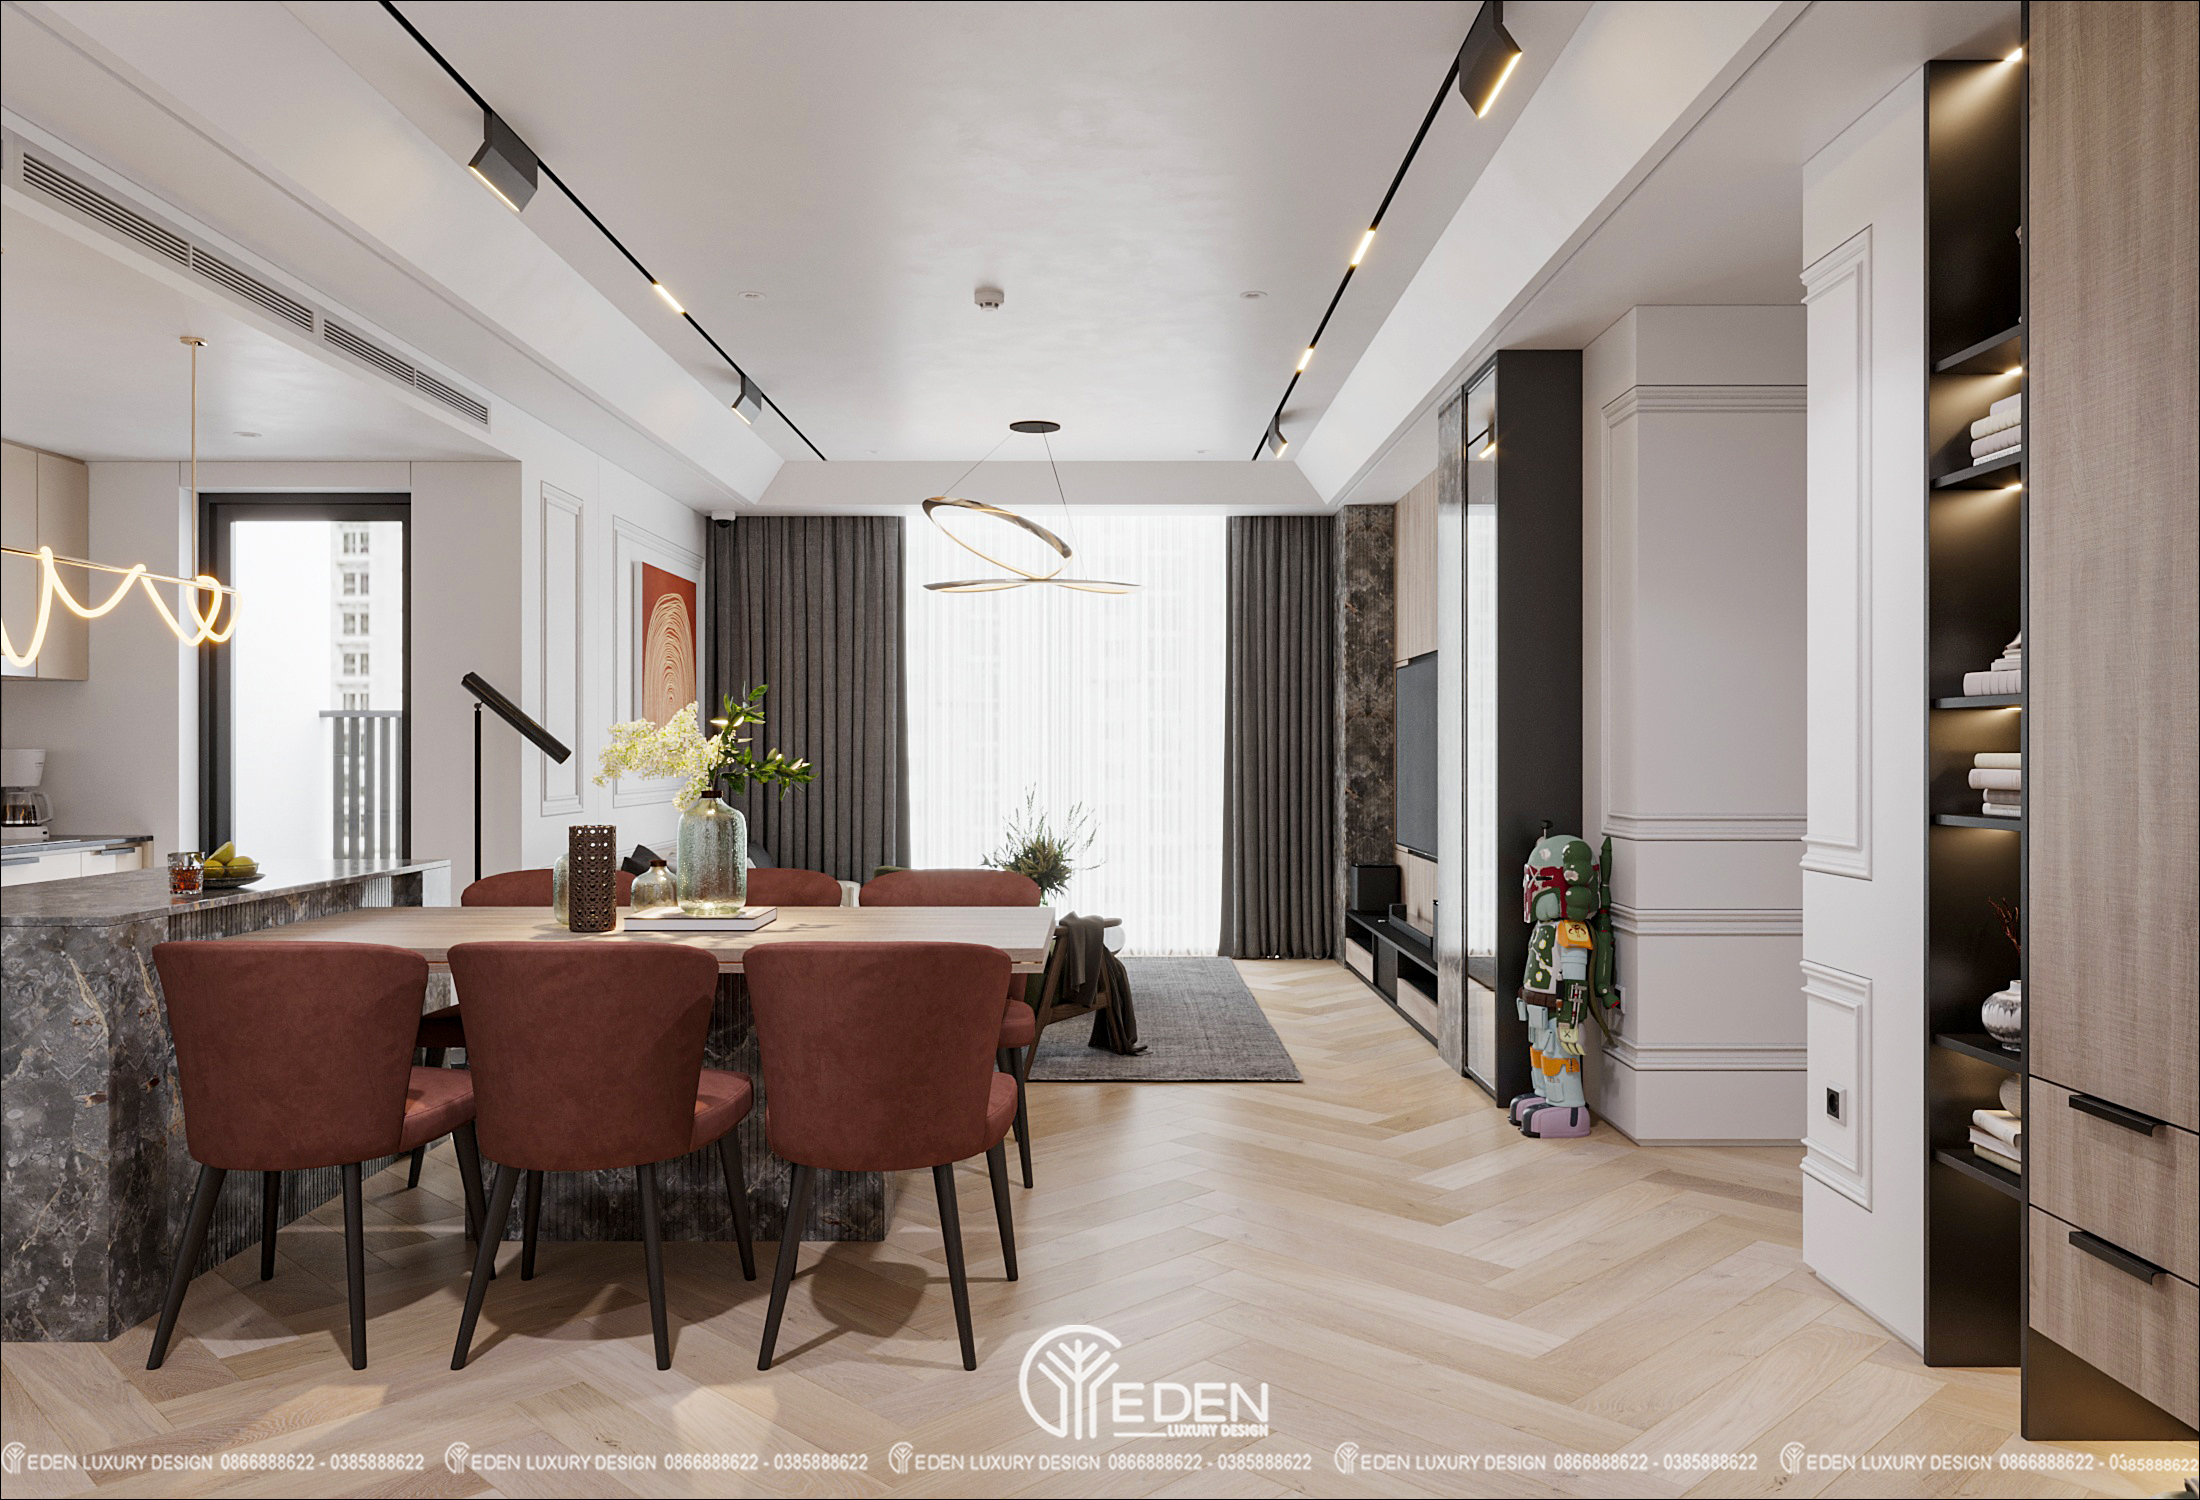 Bỏ qua những chi tiết trang trí, decor rườm rà, điểm nổi bật của căn hộ nằm ở màu sắc nội thất được phối ngẫu tự do một cách hòa hợp!